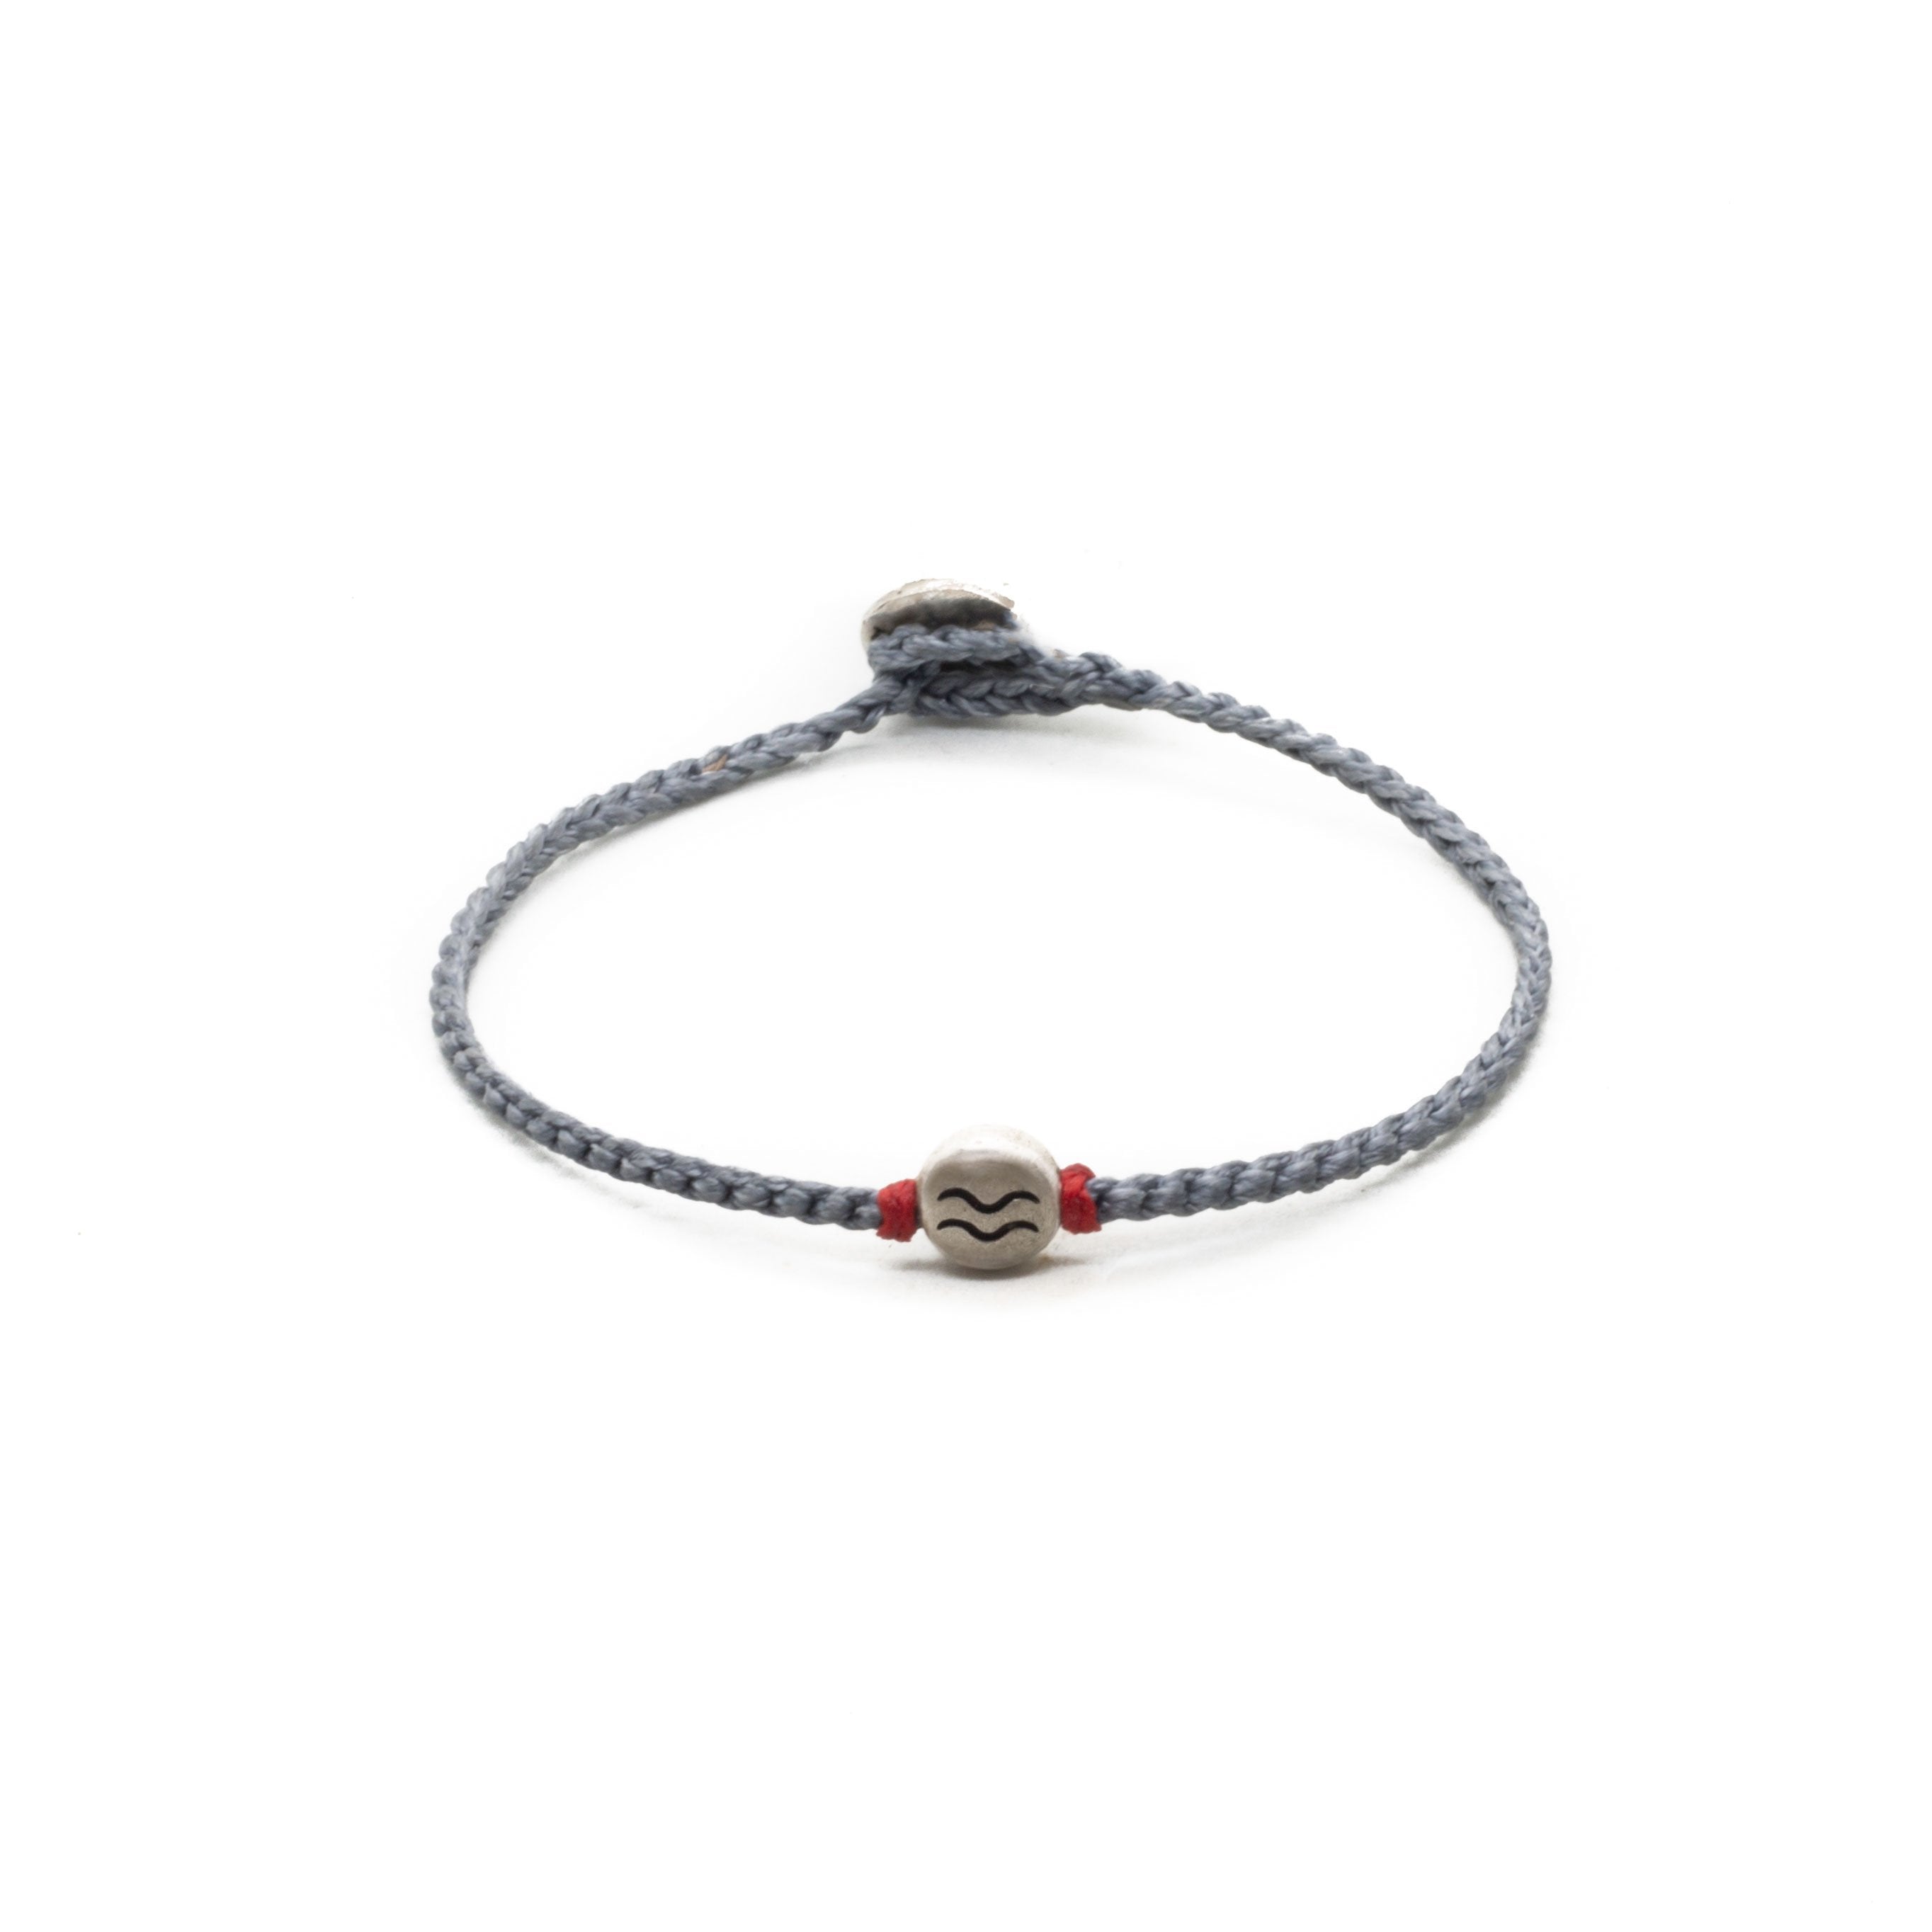 Aquarius zodiac sign grey hand braided bracelet.